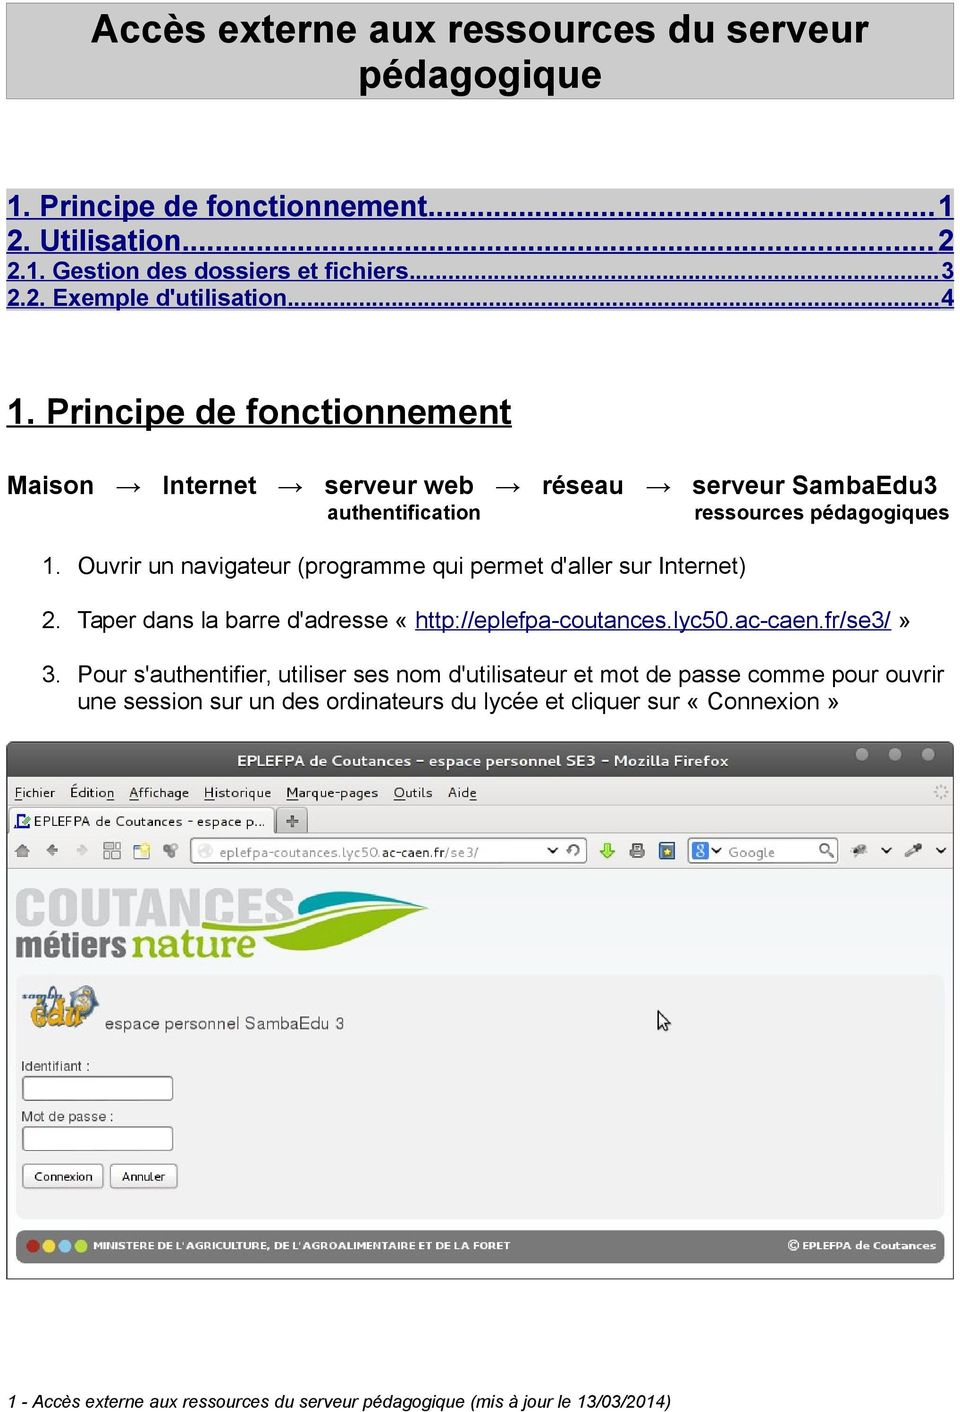 Ouvrir un navigateur (programme qui permet d'aller sur Internet) 2. Taper dans la barre d'adresse «http://eplefpa-coutances.lyc50.ac-caen.fr/se3/» 3.